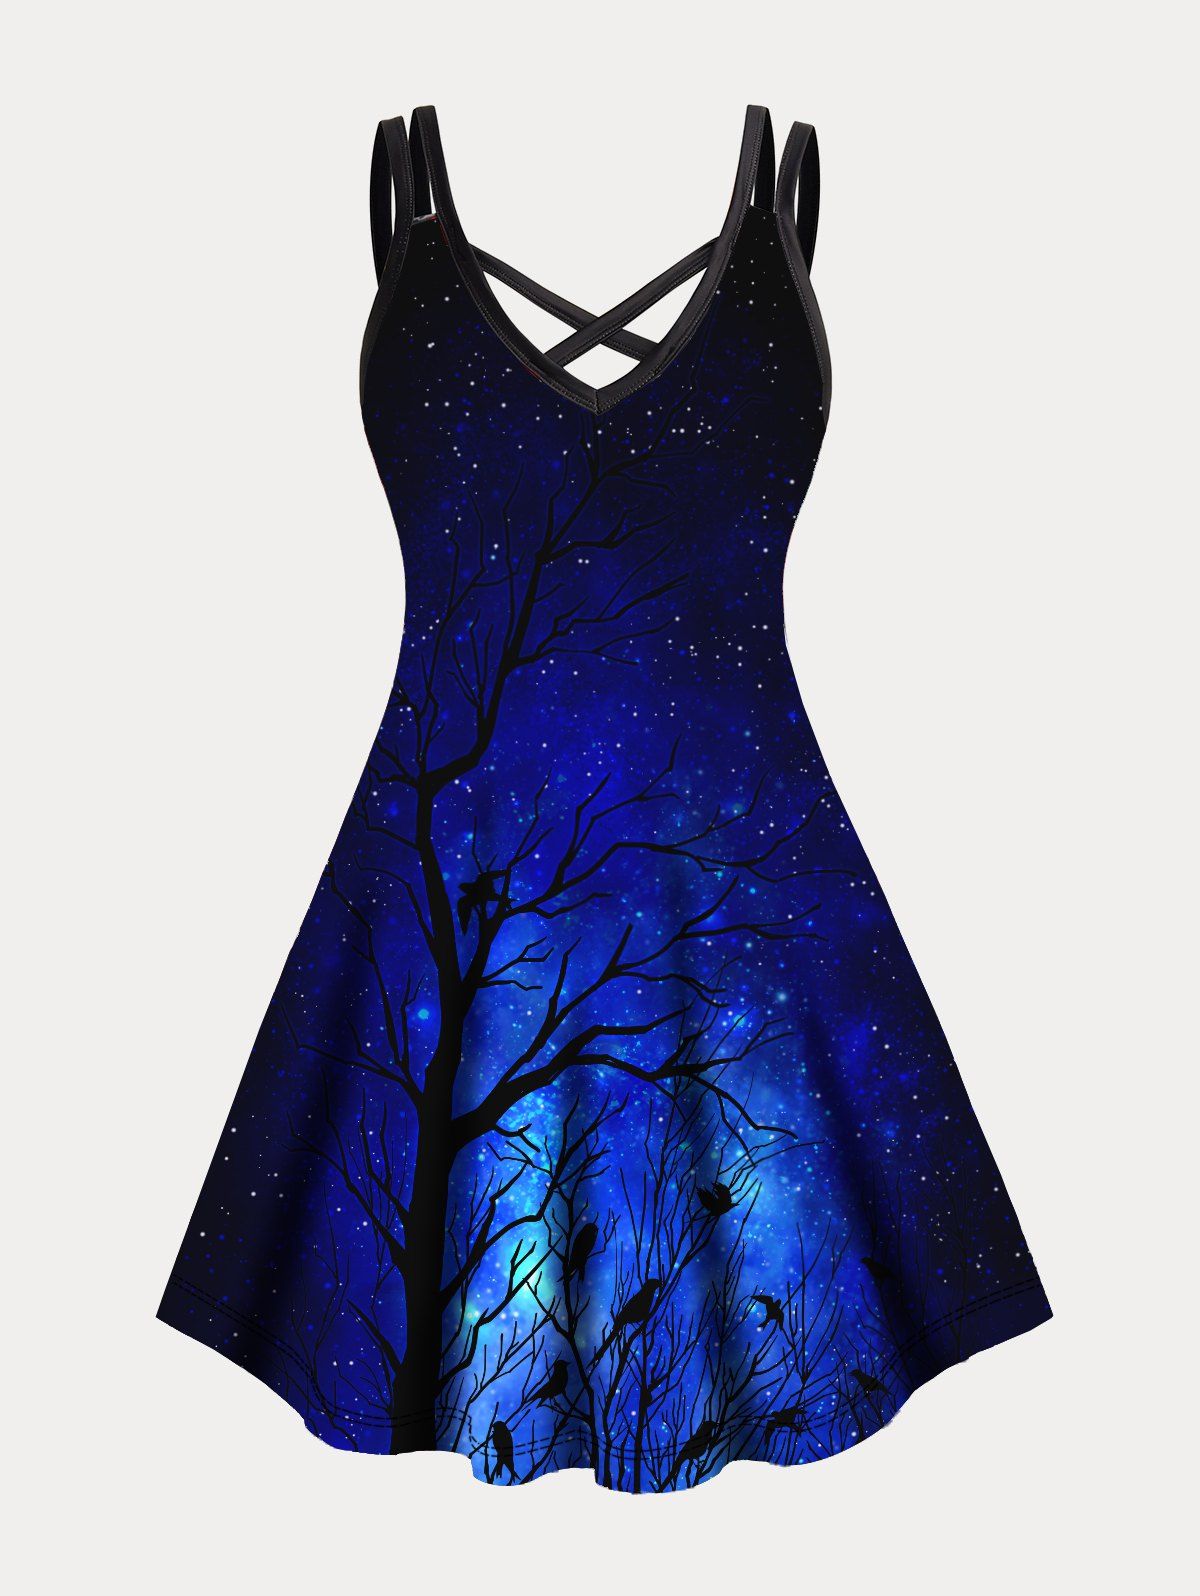 Plus Size Dress Tree Branches Starry Night Print Crisscross A Line Mini Dress - BLACK 5XL